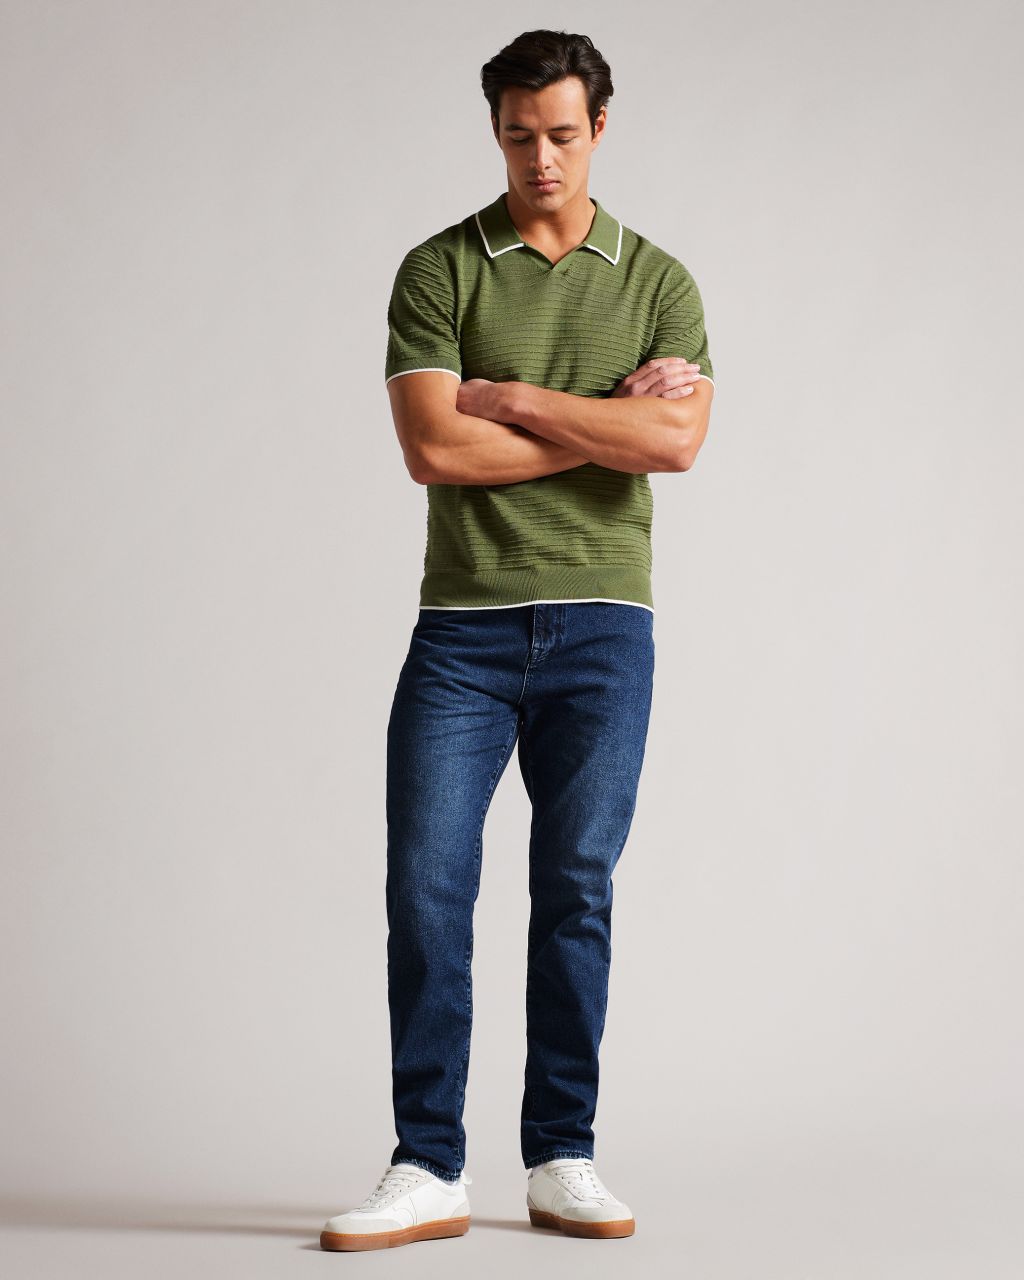 Ted Baker Men's Slim Leg Denim Jeans in Medium Blue, Strtfo, Cotton